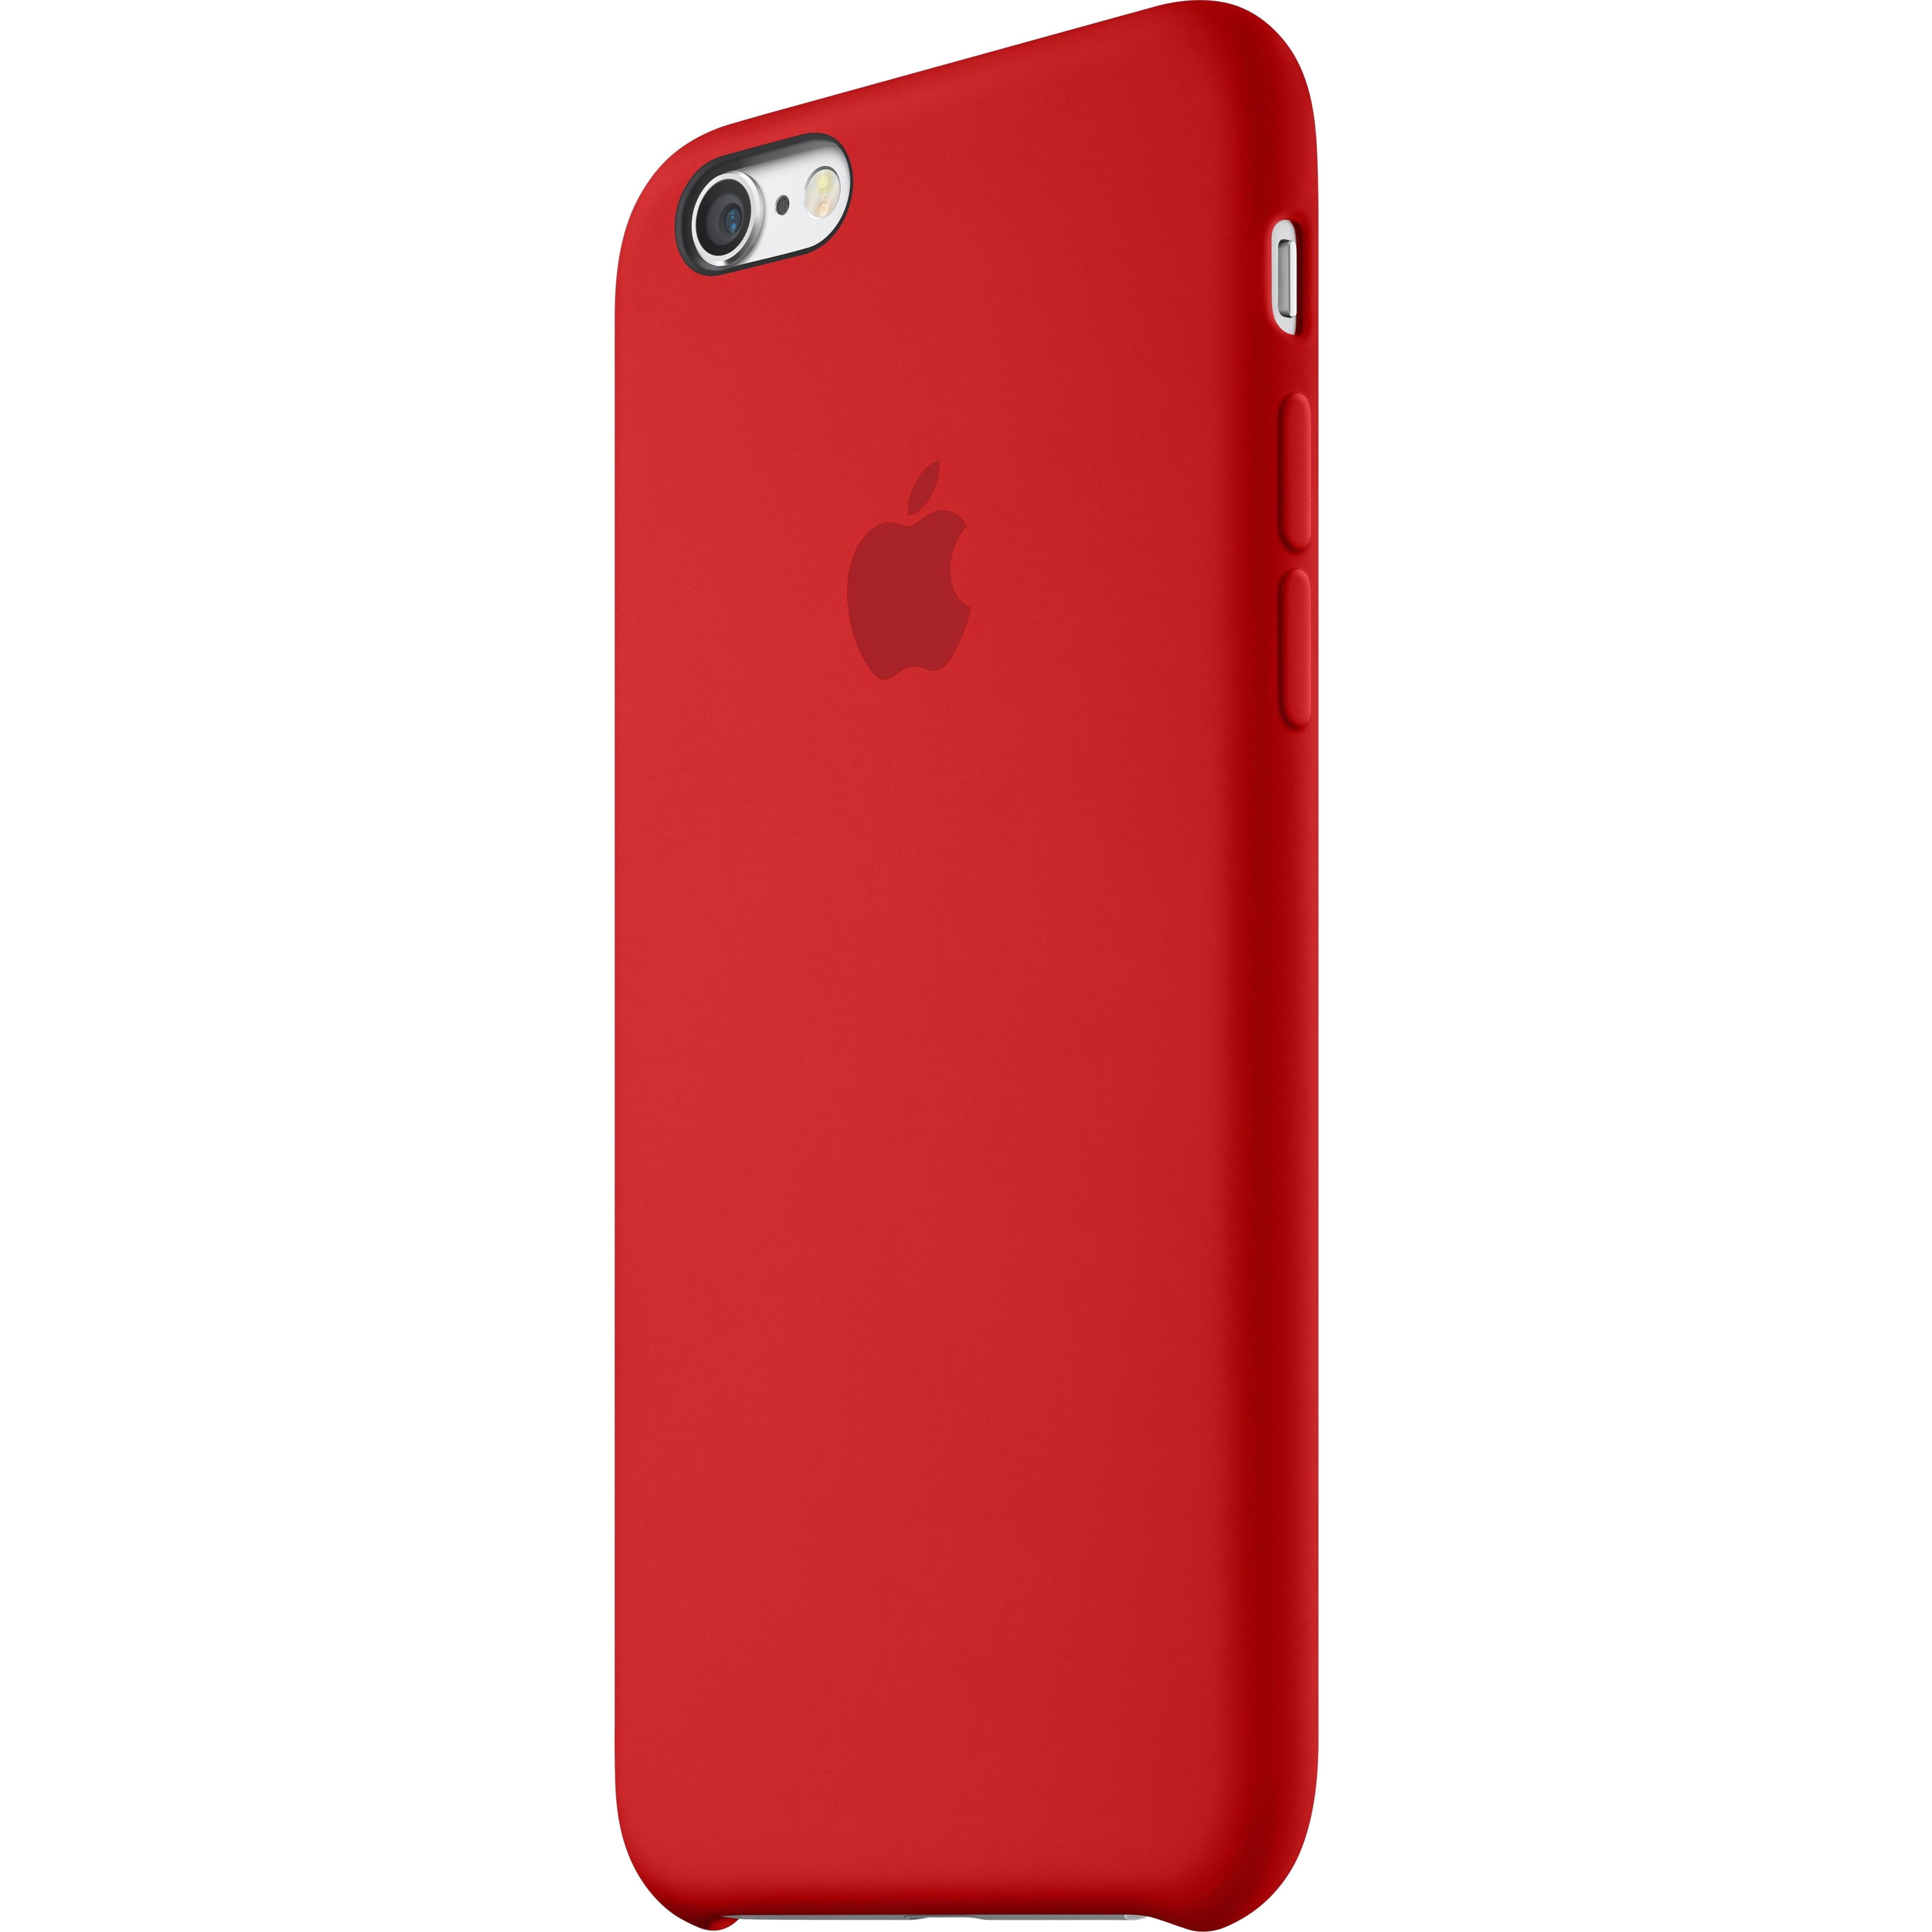 Opiaat verkoper beroerte Apple iPhone 6s Silicone Case, (Product)Red - Walmart.com